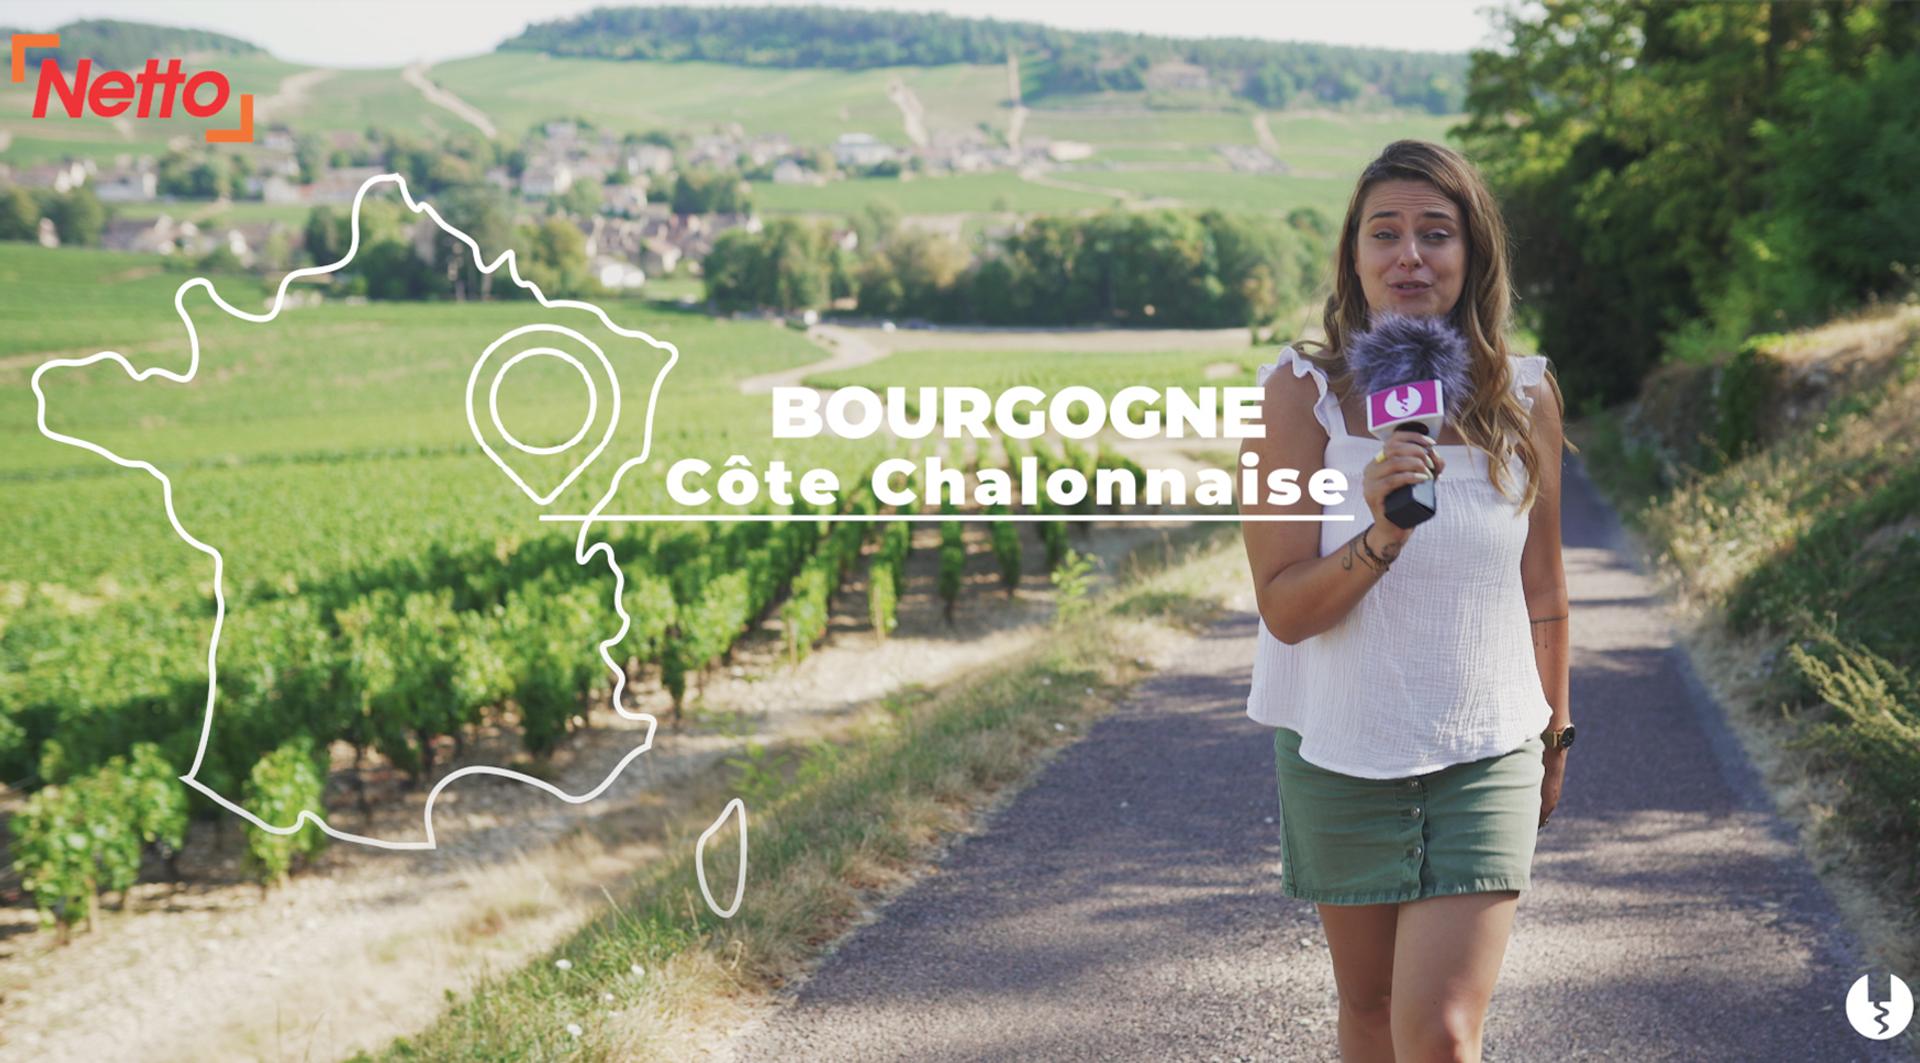 Foire aux vins NETTO 2020 - Etape 4 : Bourgogne Côte Chalonnaise